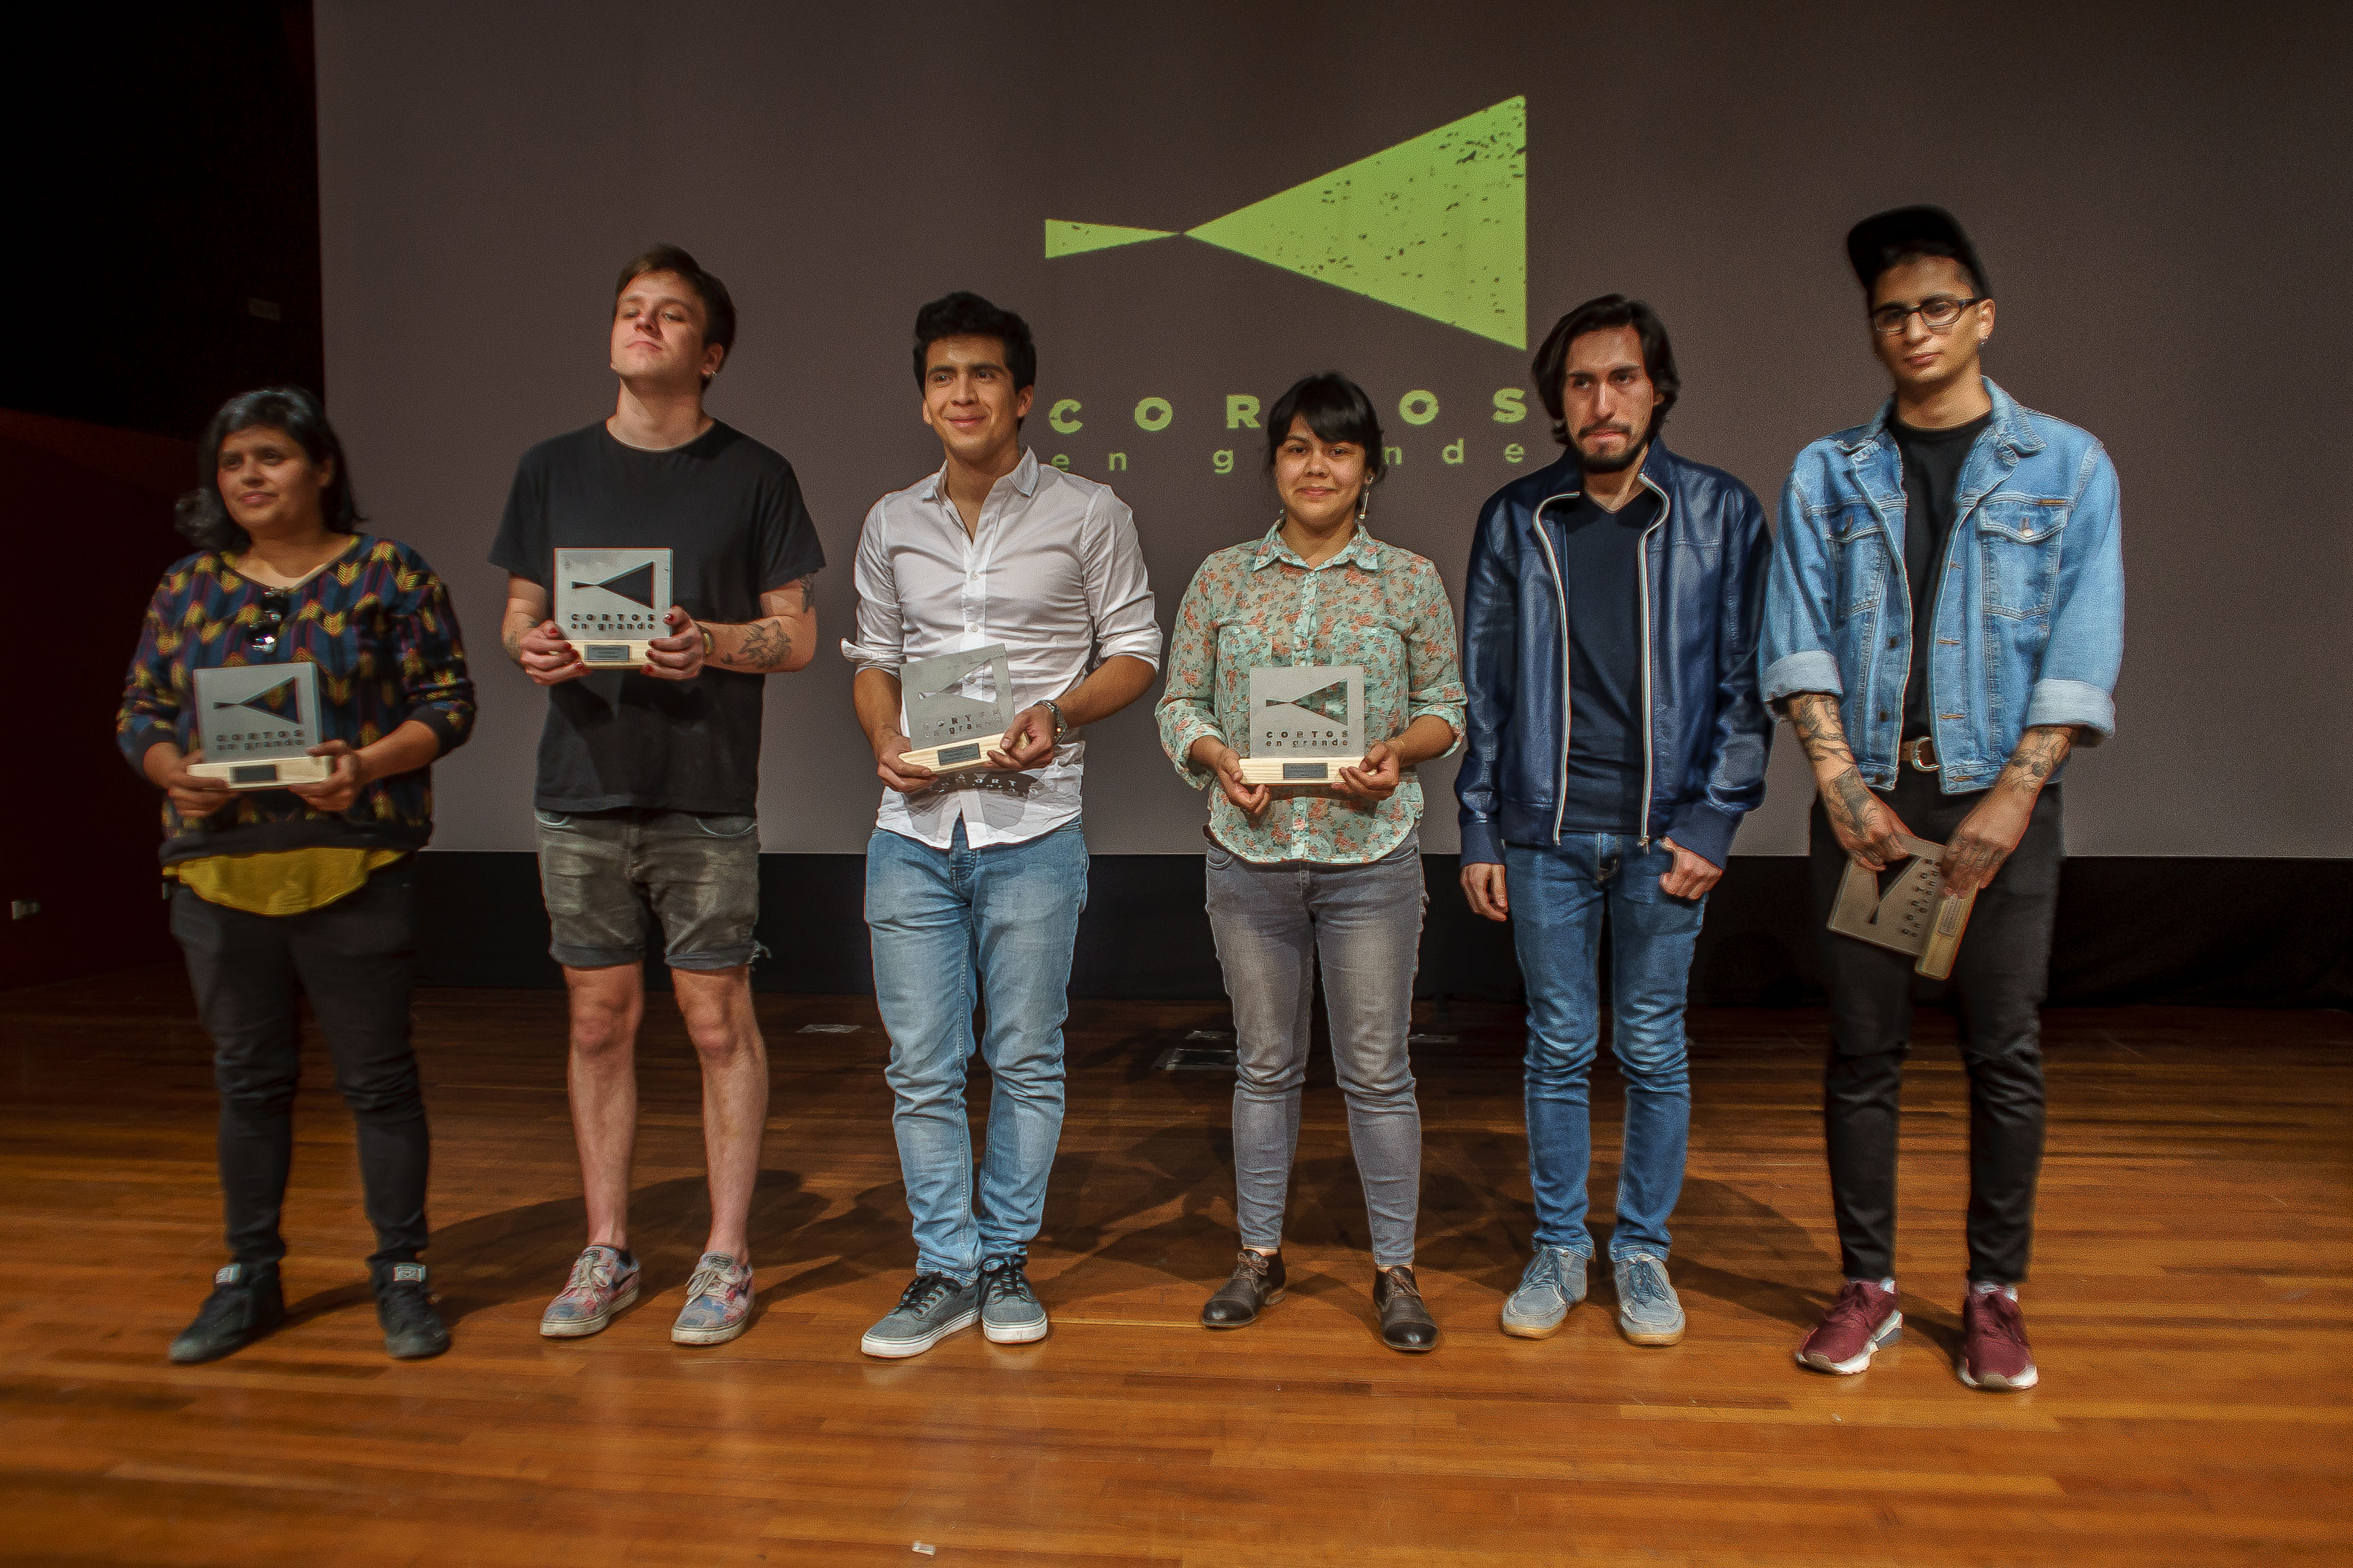 Festival de cortometrajes “Cortos en Grande” dio a conocer a sus ganadores